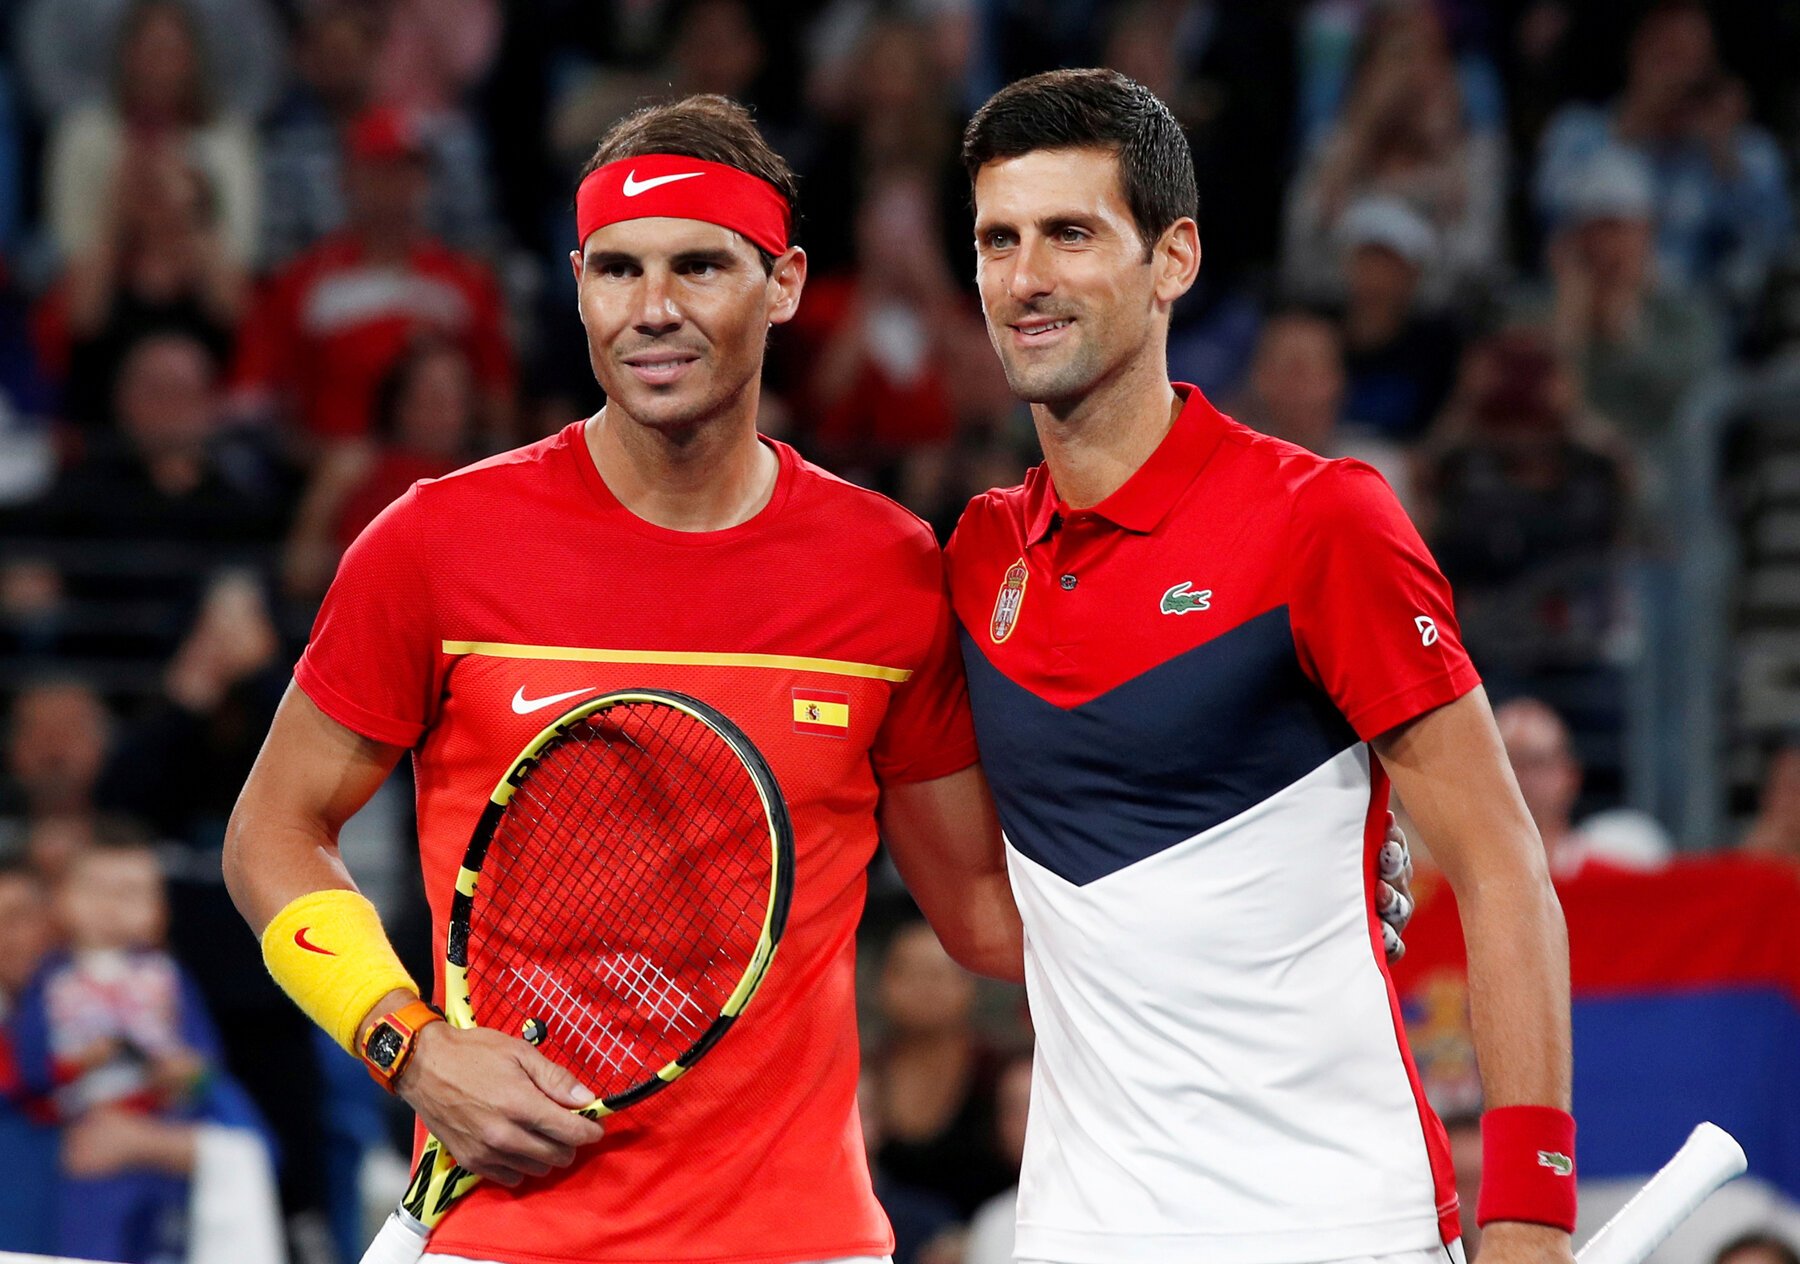  Djokovici şi-a anunţat prezenţa la Laver Cup, dar a greşit taggul pe Facebook la Rafael Nadal